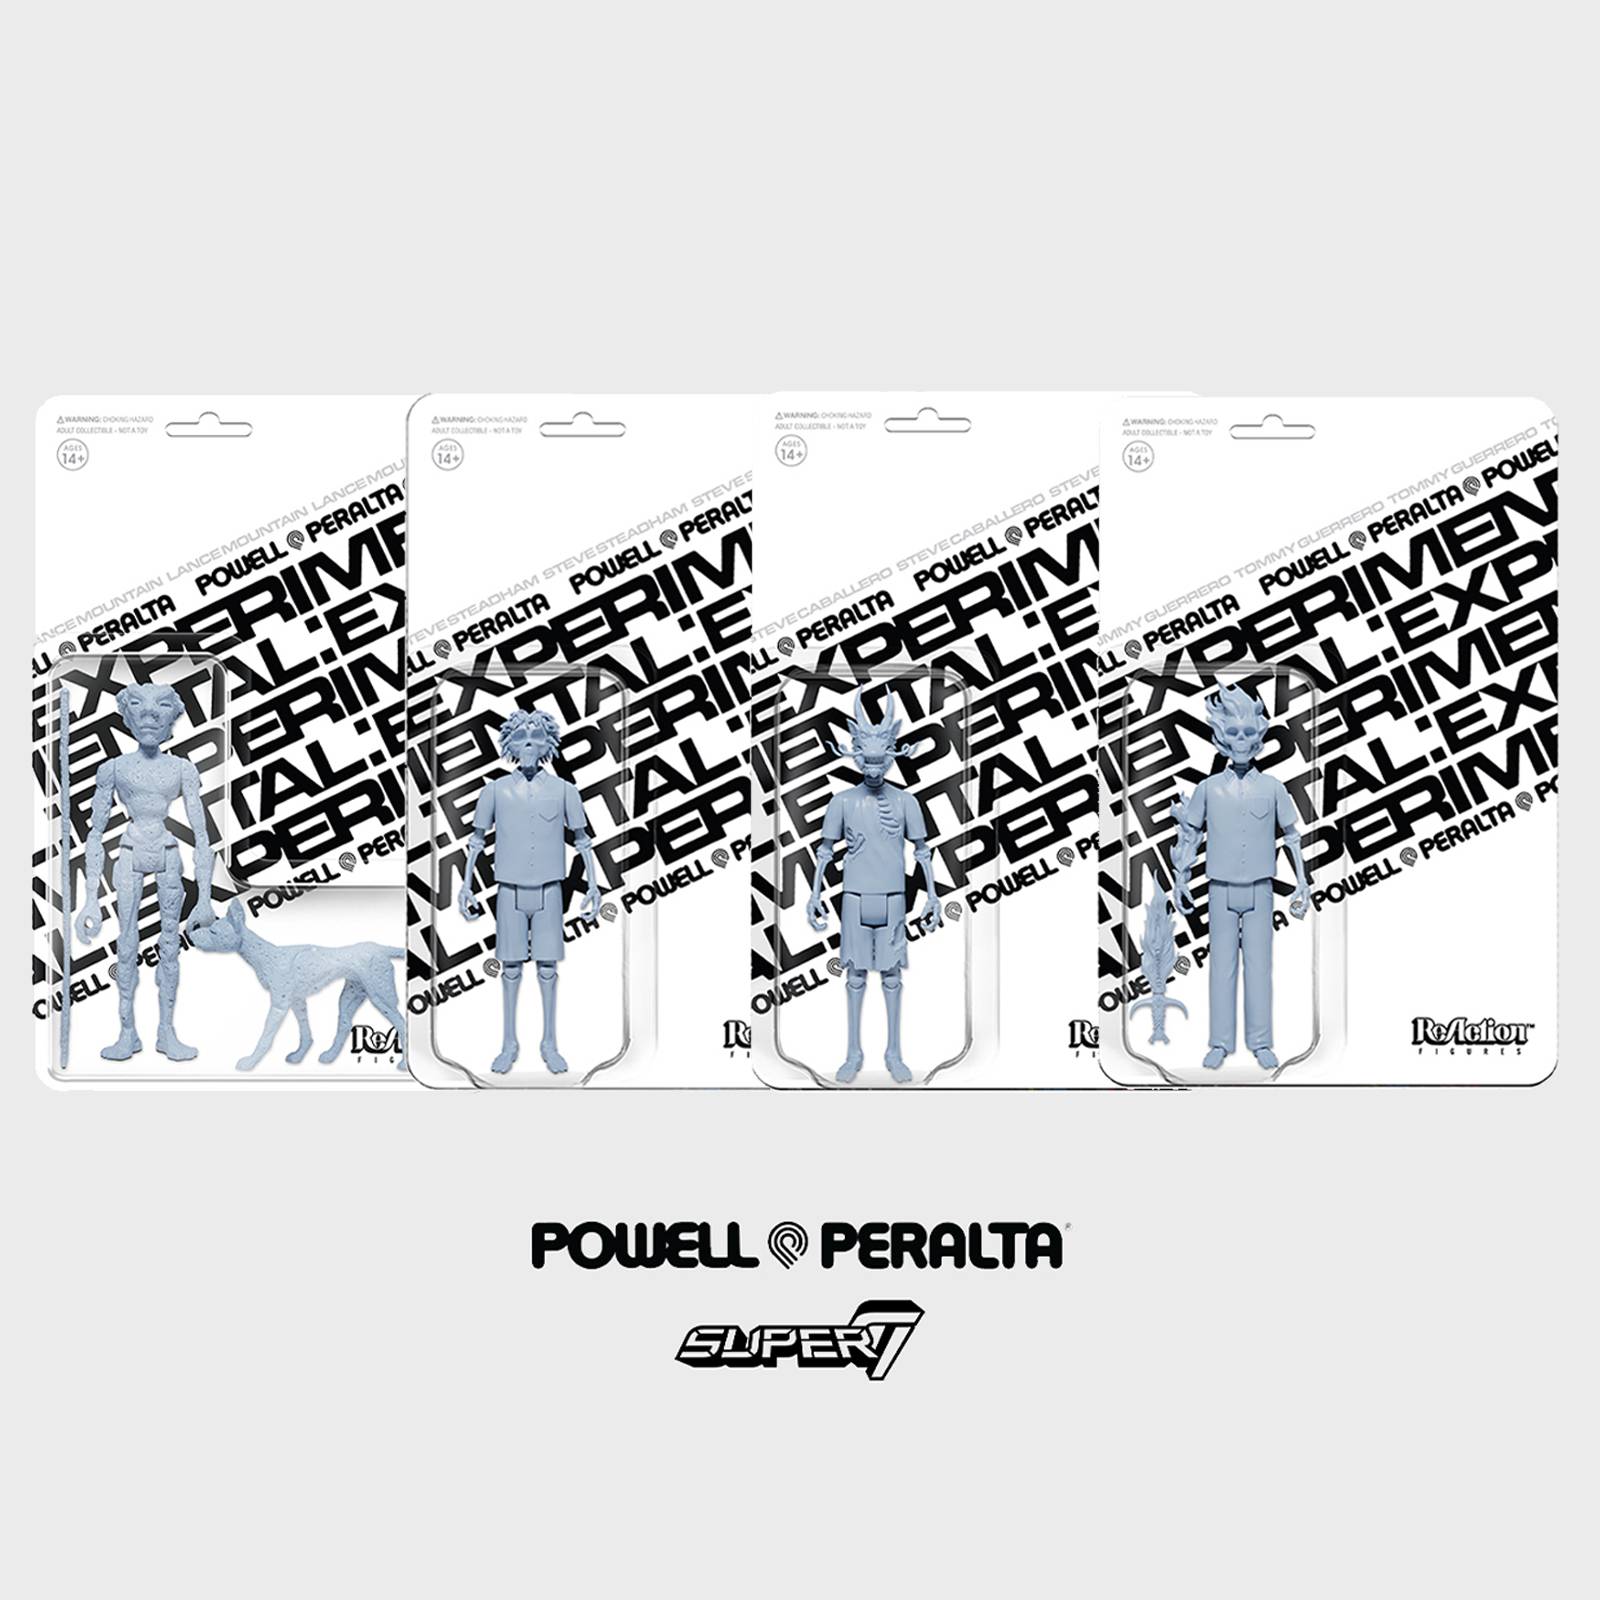 Powell Peralta x Super7